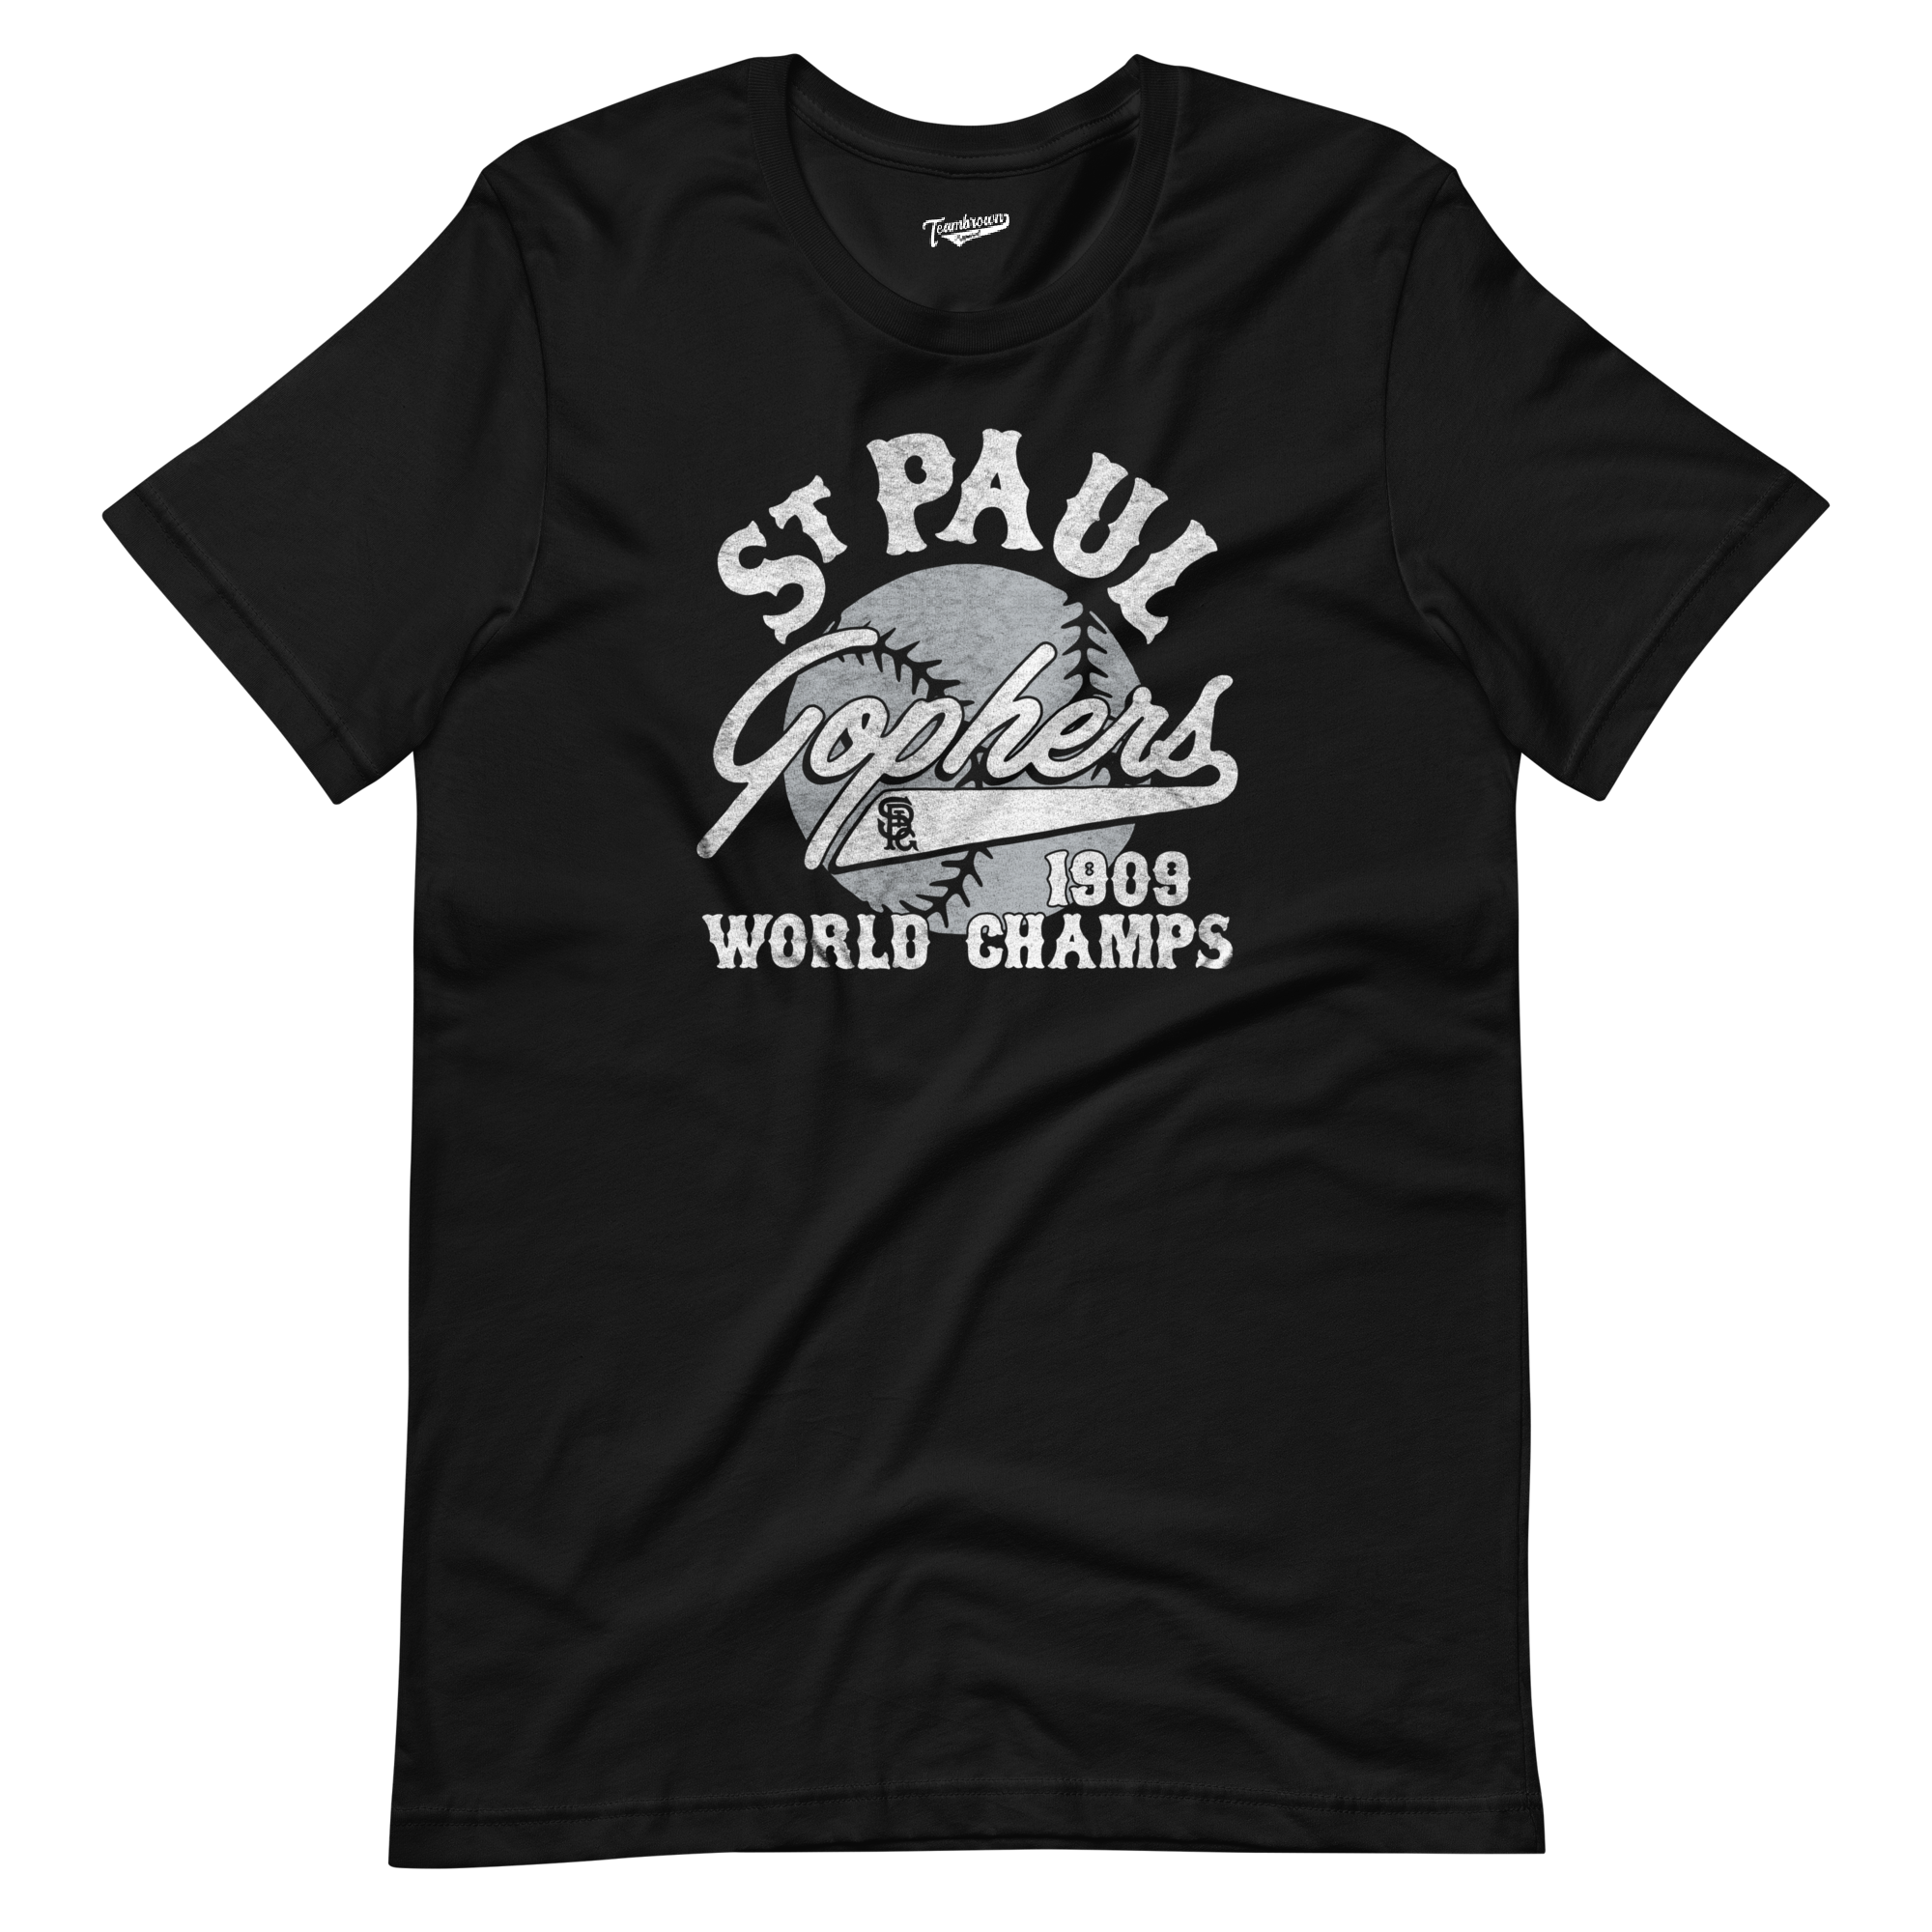 1909 St. Paul Gophers - Unisex T-Shirt